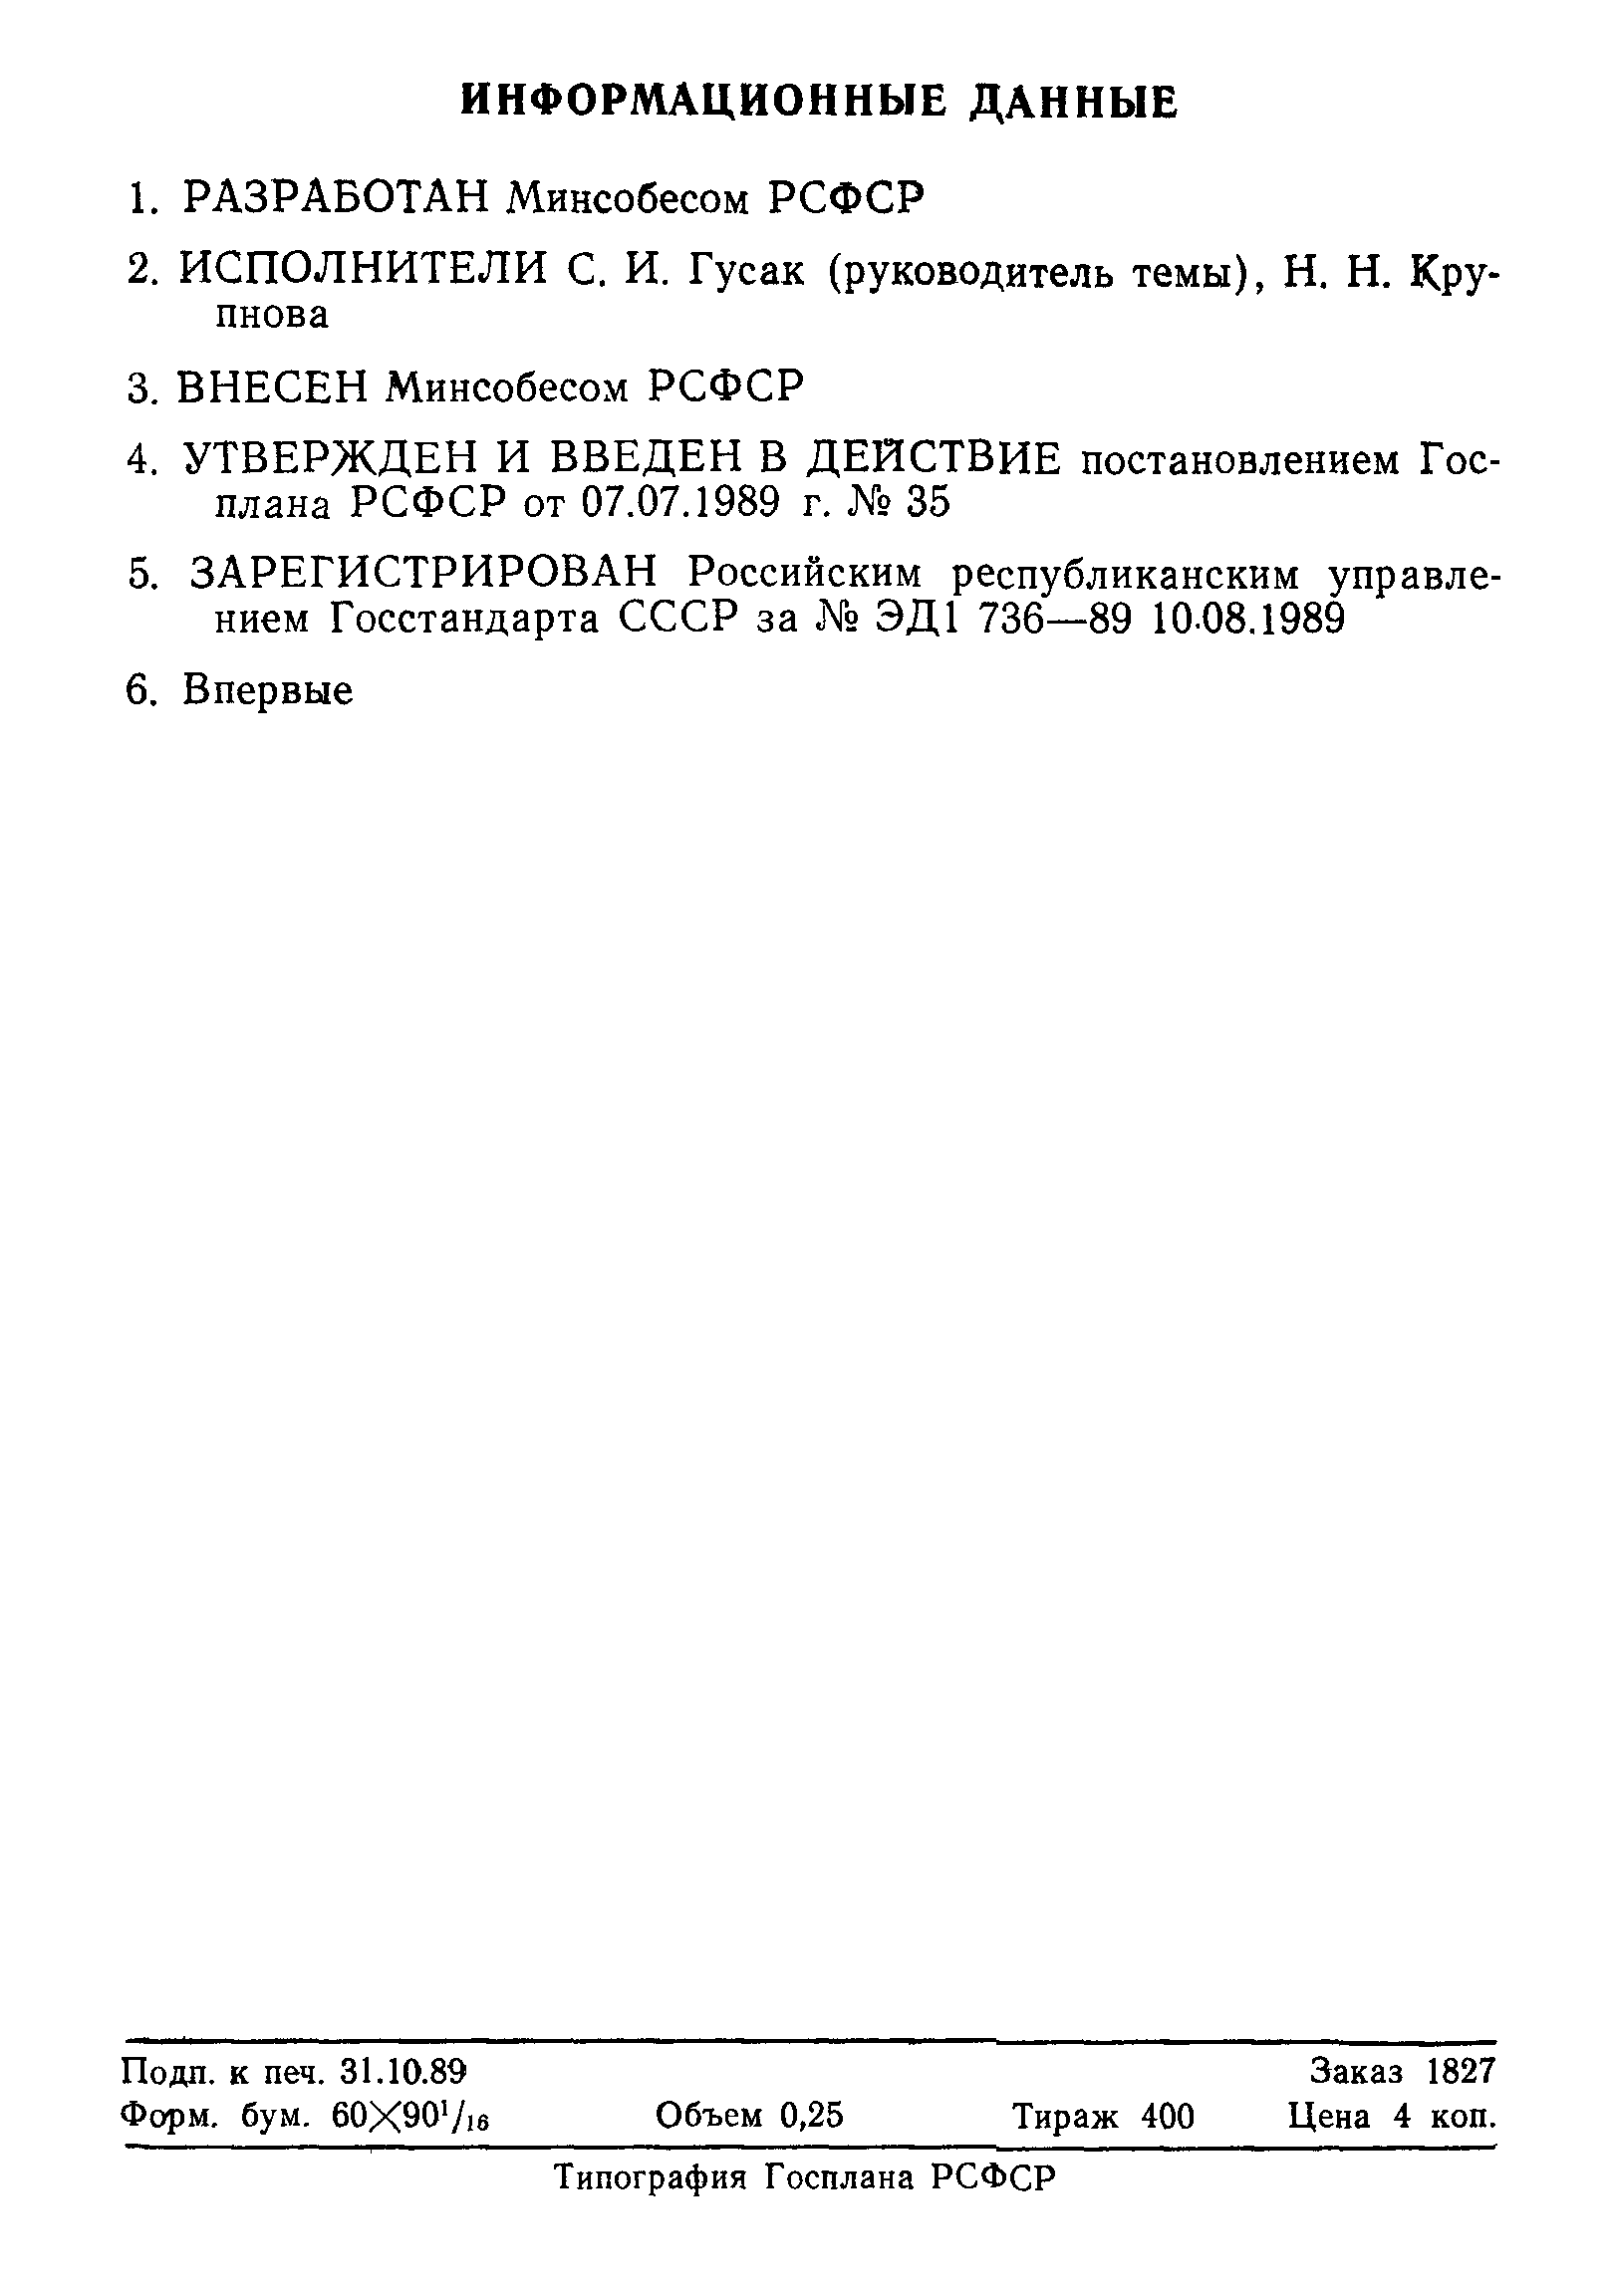 РСТ РСФСР ЭД1 736-89